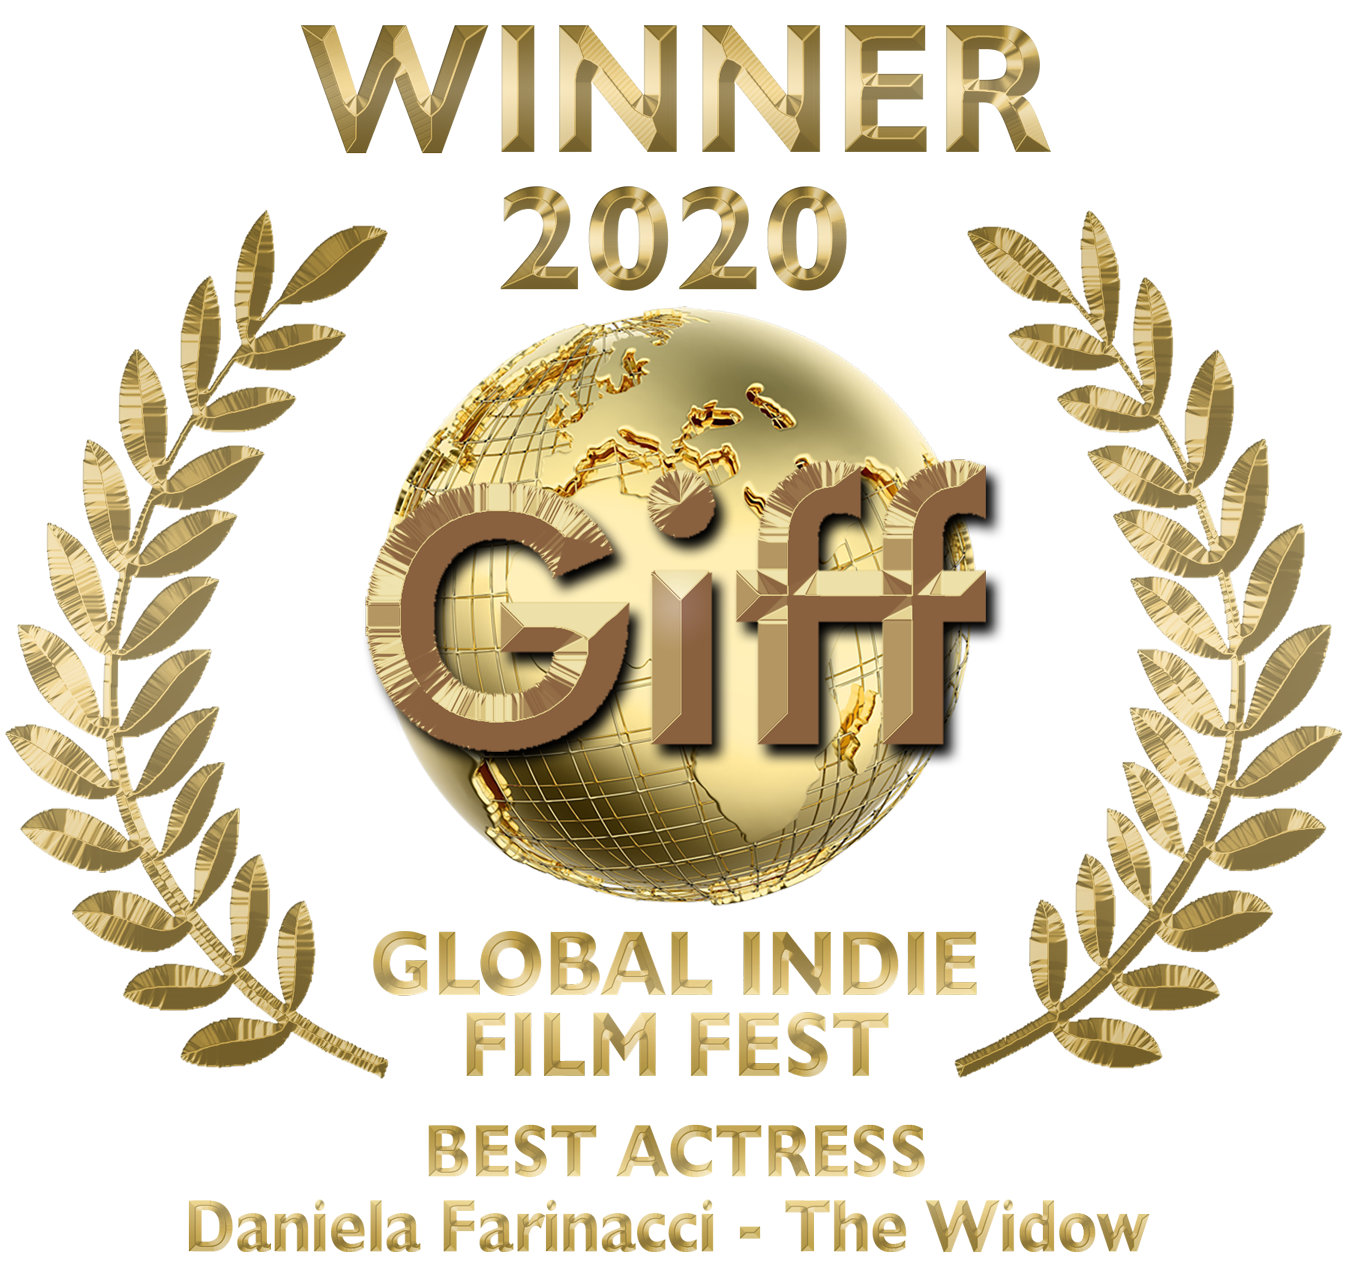 Giff Gold Award Actress